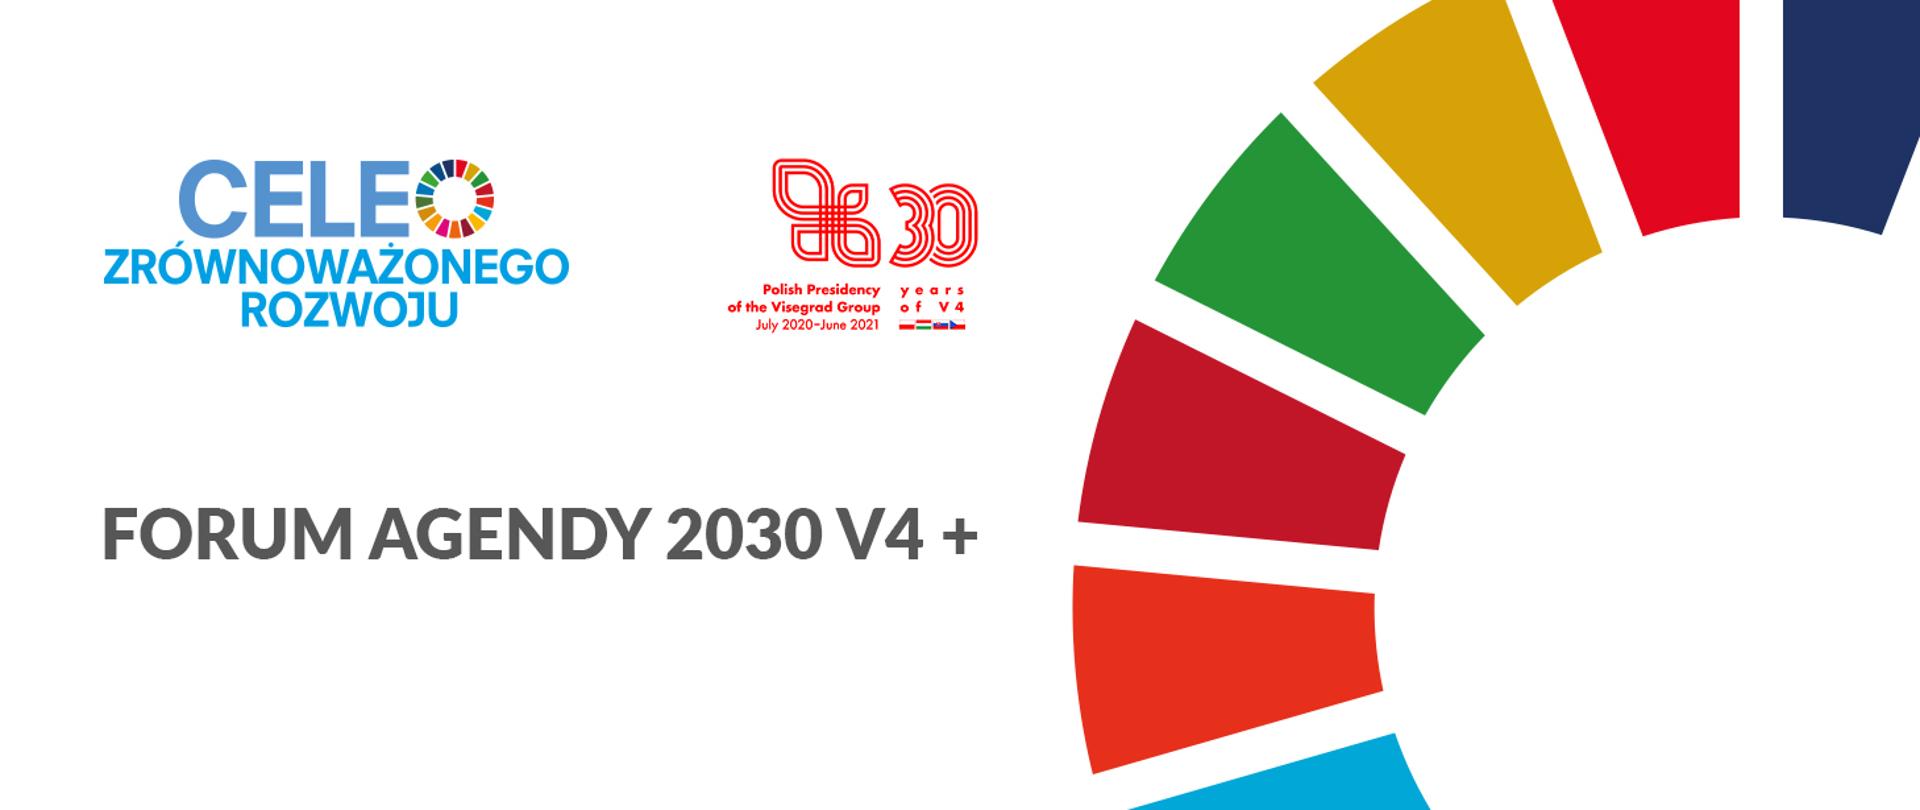 Na białym tle napis "Forum agendy 2030 V4 plus" oraz logotyp prezydencji Polski w Grupie Wyszehradzkiej i logotyp "Cele zrównoważonego rozwoju"